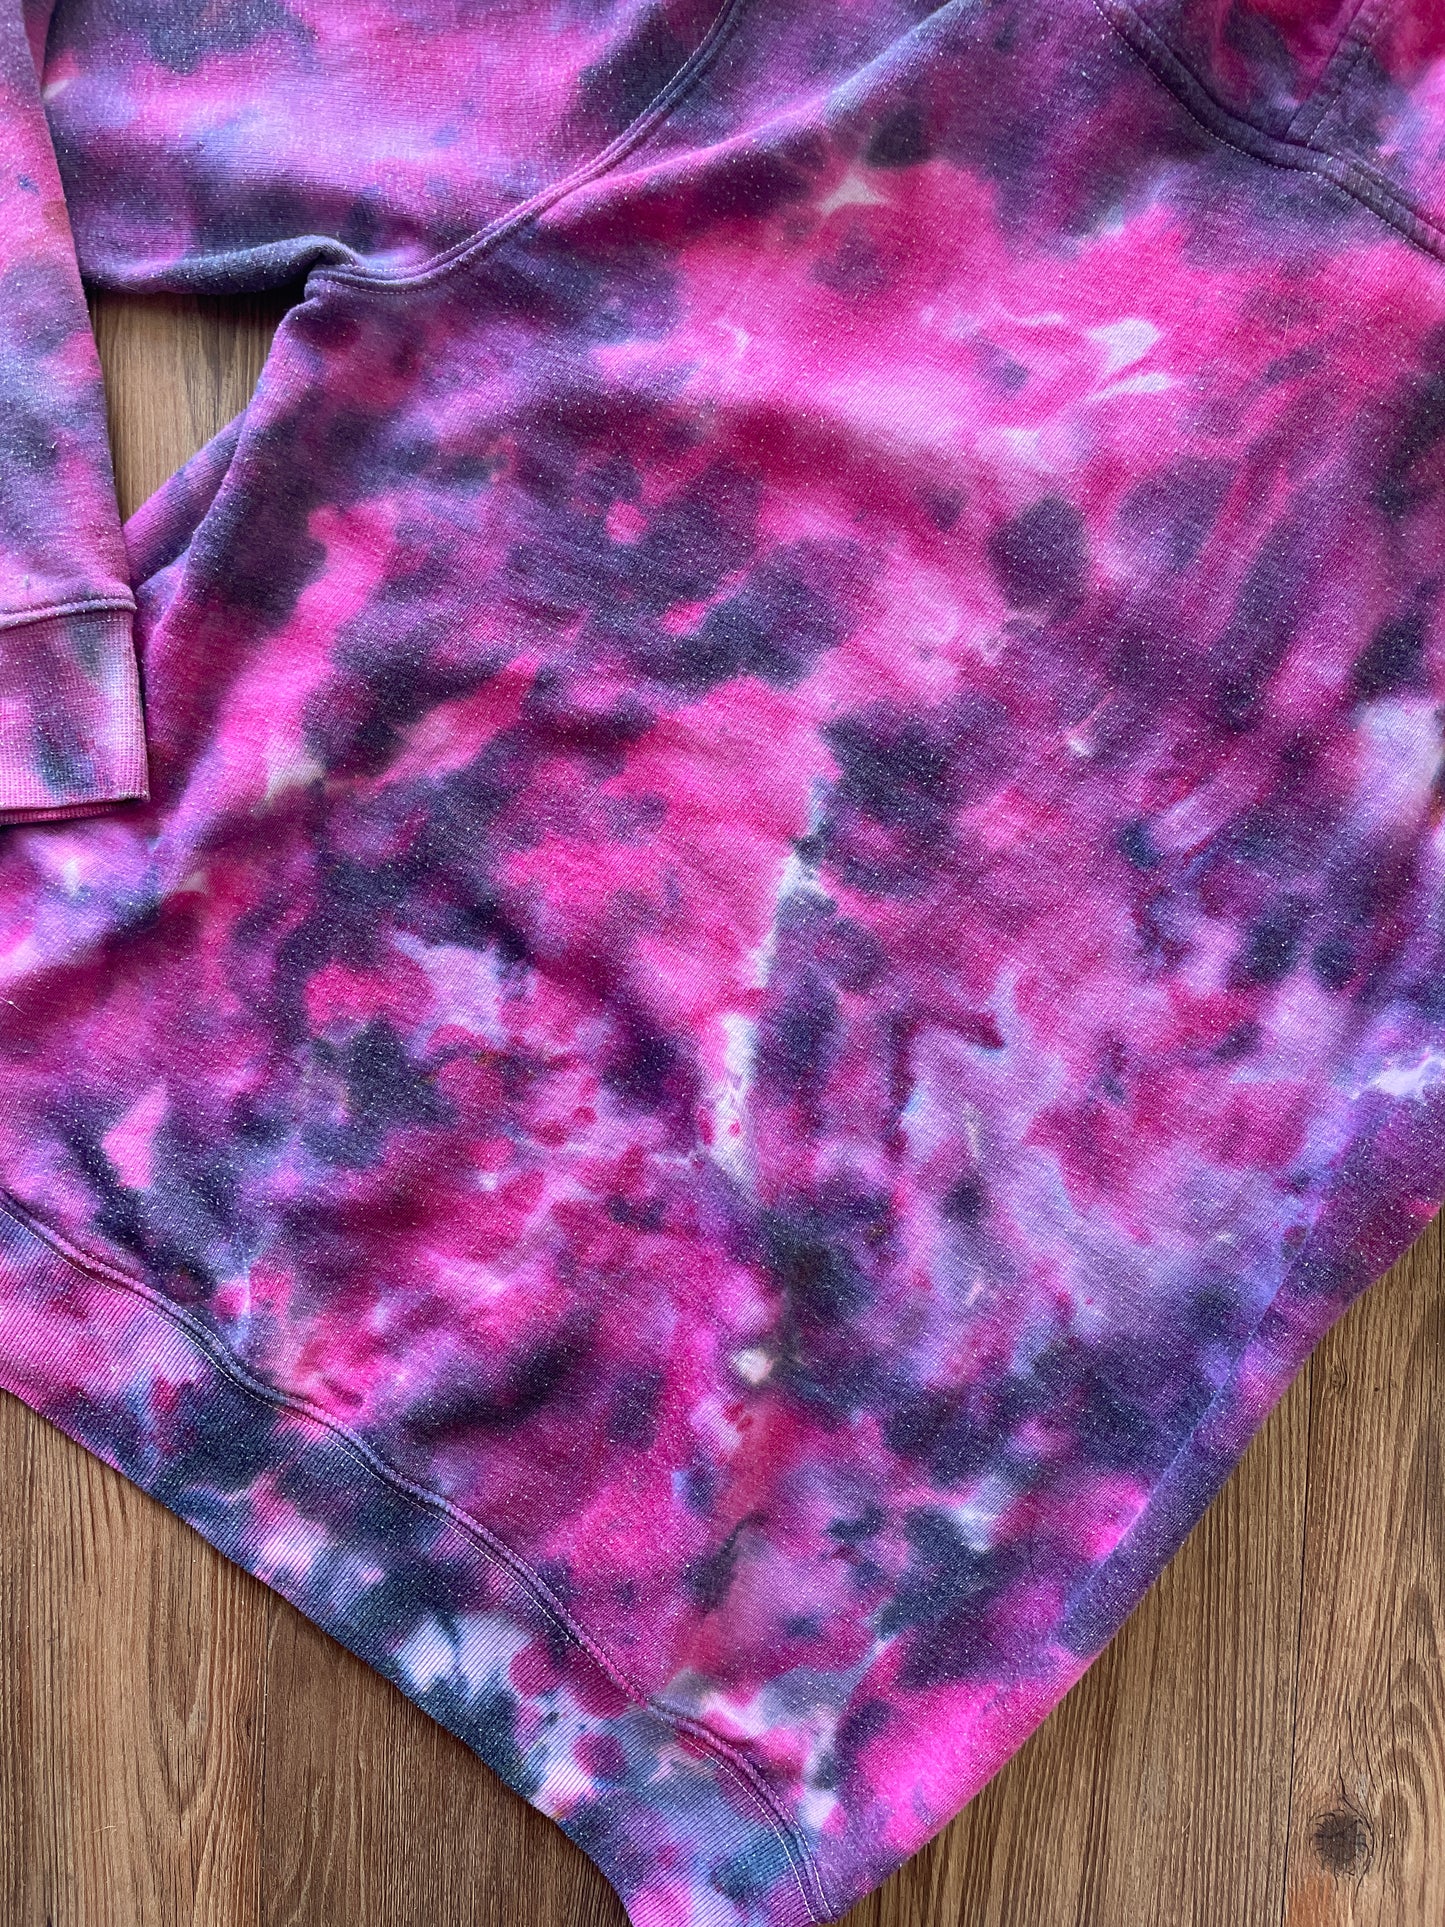 MEDIUM Women’s Pink and Black Galaxy Tie Dye Sweatshirt | Old Navy Crumpled Subtle Tie Dye Long Sleeve Hoodie